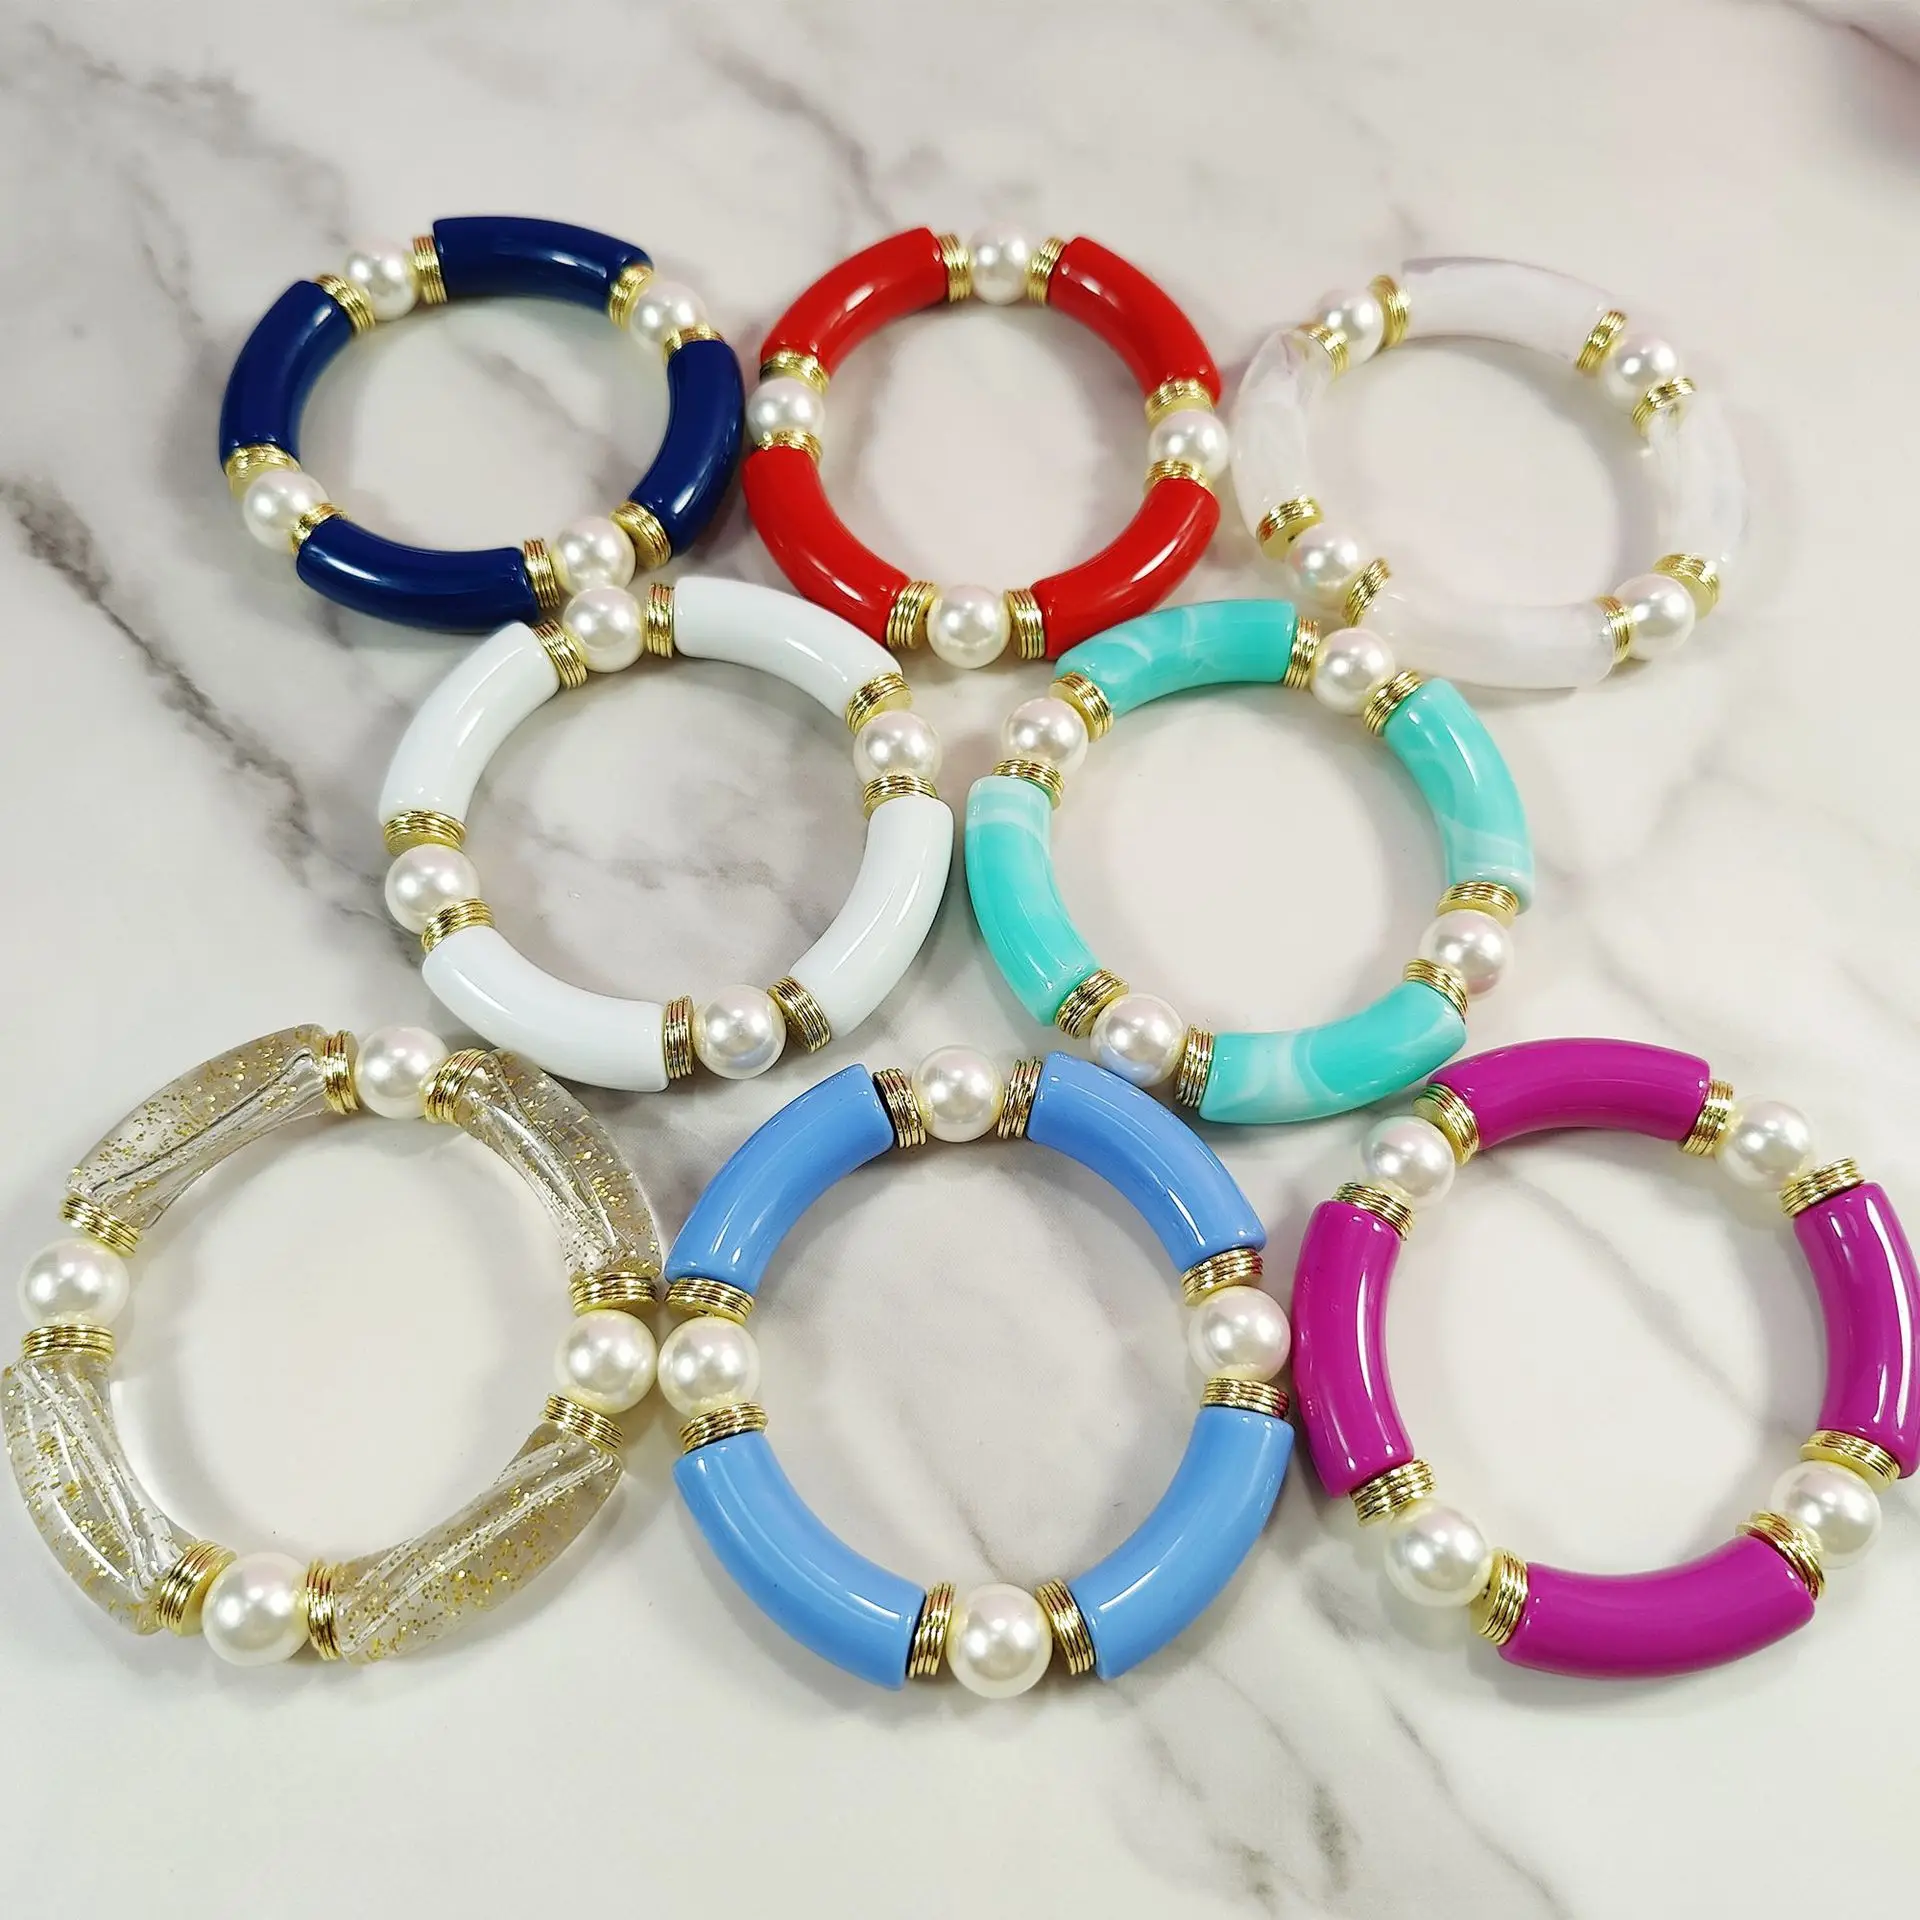 For Women Noble Team Bride Bachelorette Bracelets Wristbands | eBay